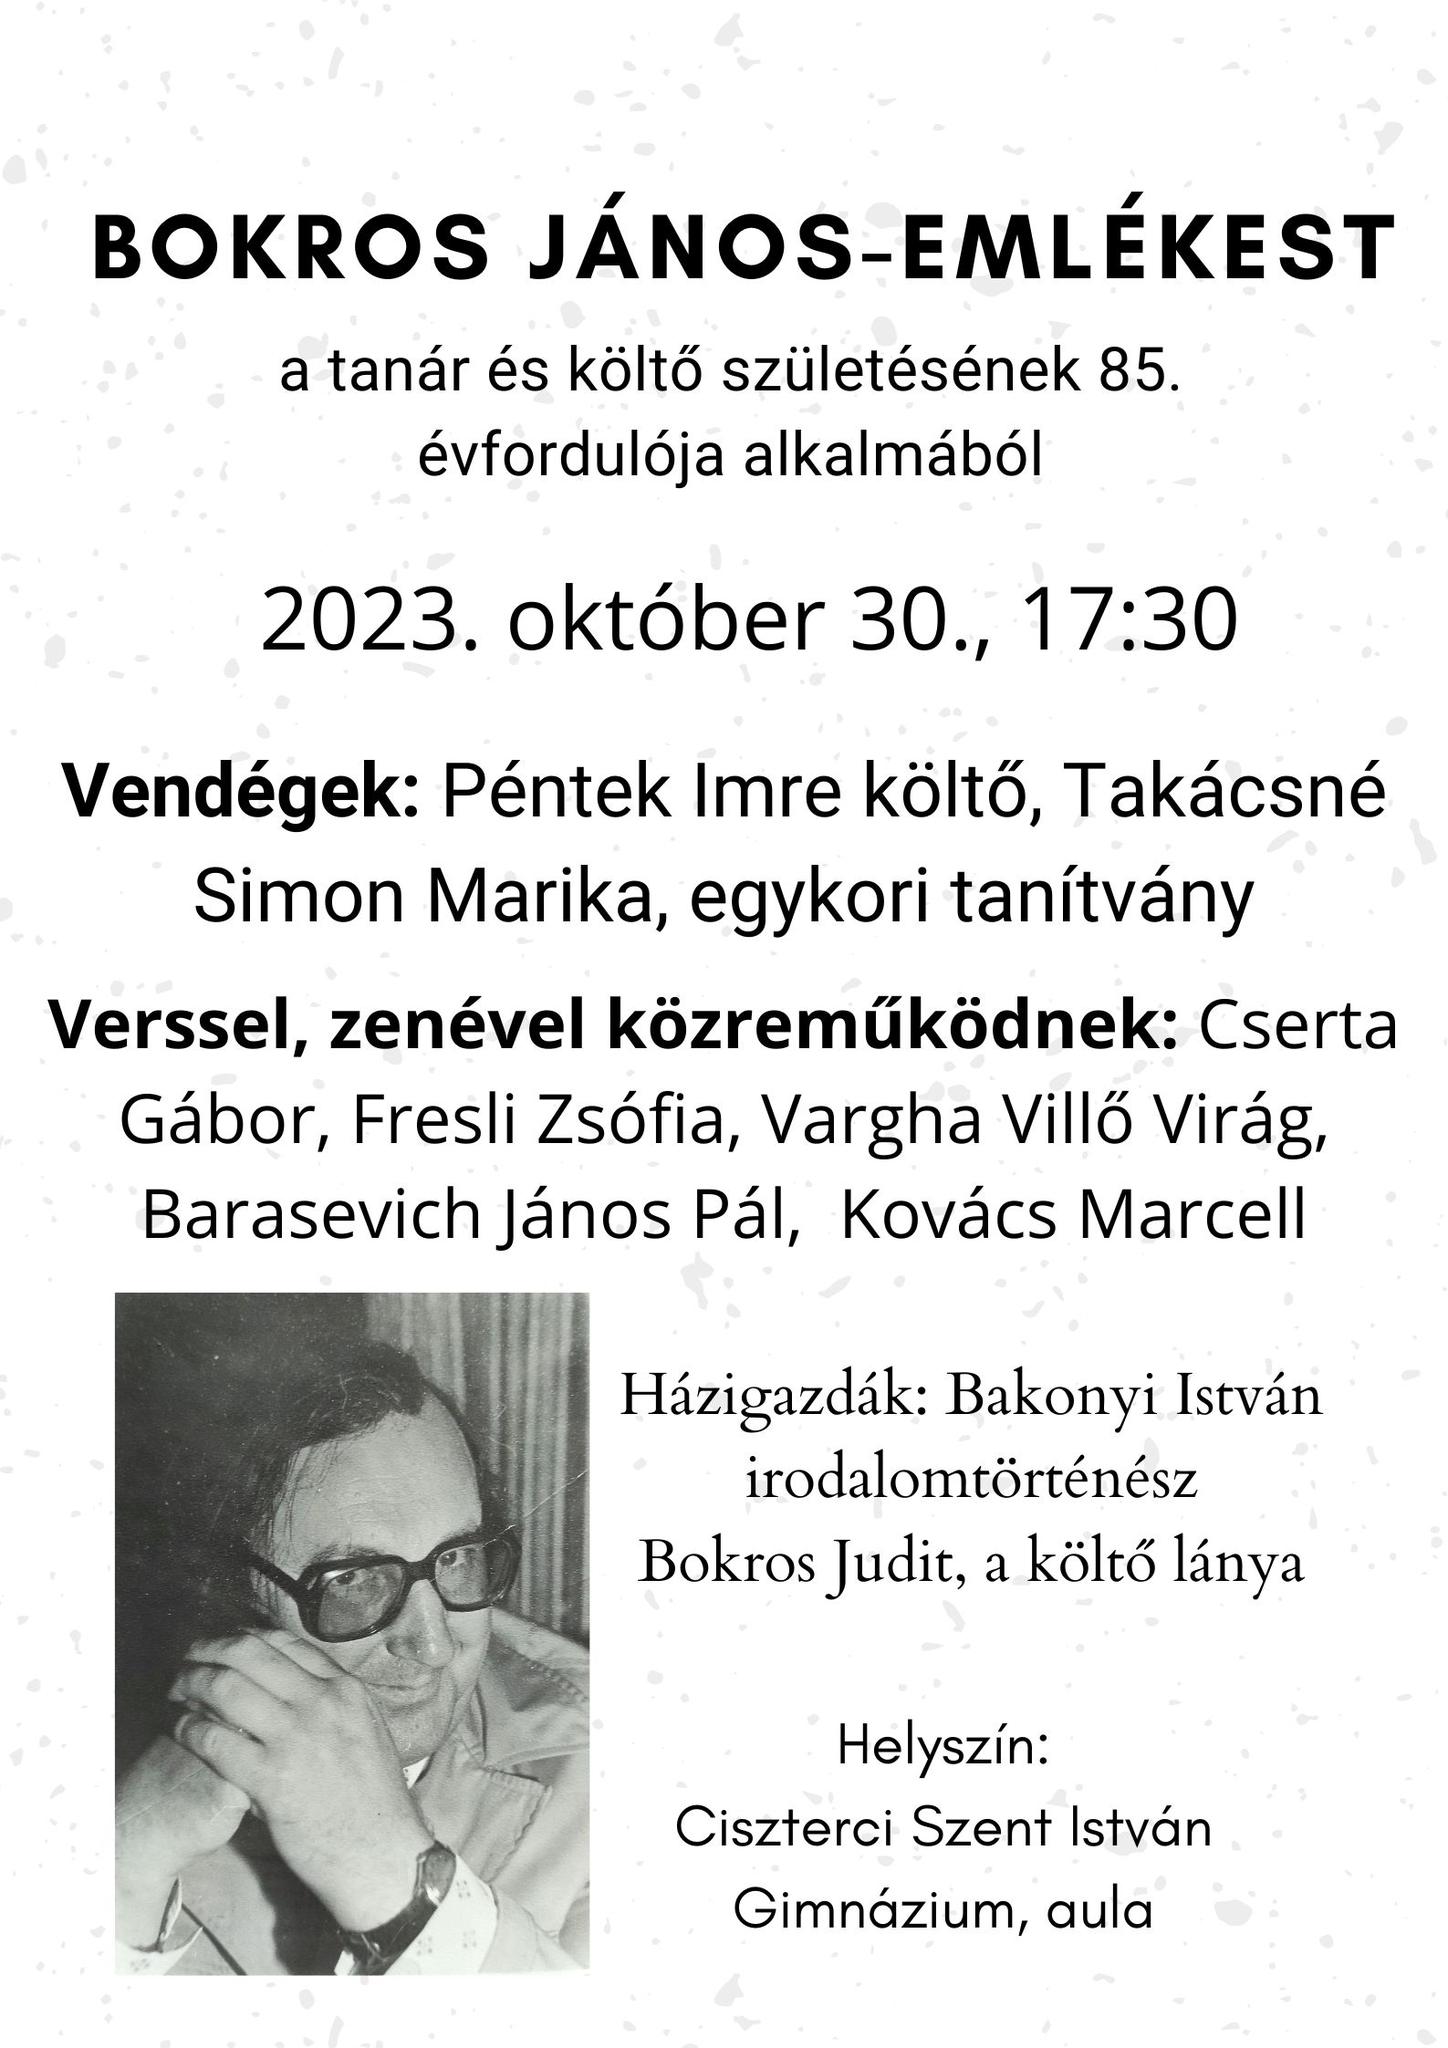 Bokros Jánosra emlékeznek október 30-án a Ciszterci Gimnáziumban